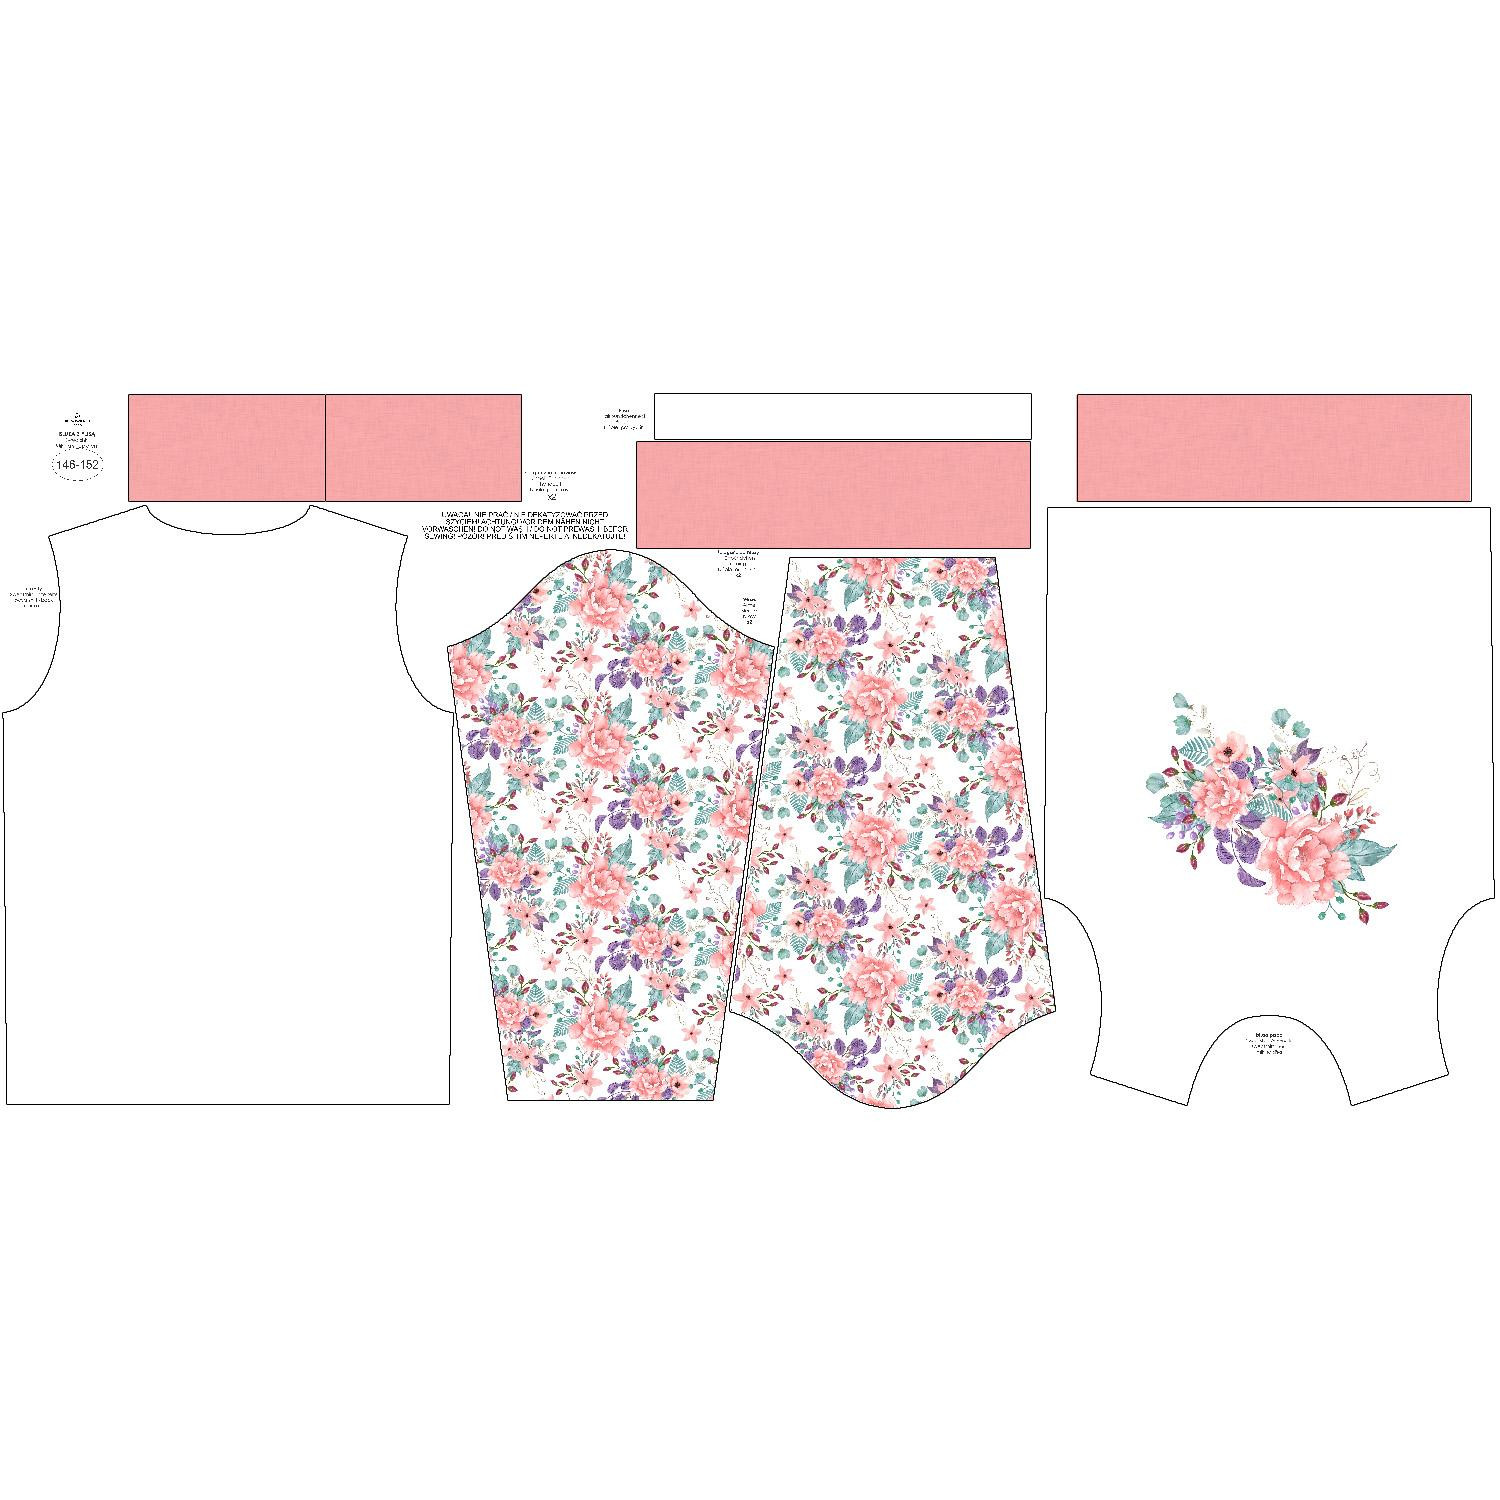 CHILDREN'S (NOE) SWEATSHIRT - WILD ROSE FLOWERS PAT. 1 (BLOOMING MEADOW) - sewing set